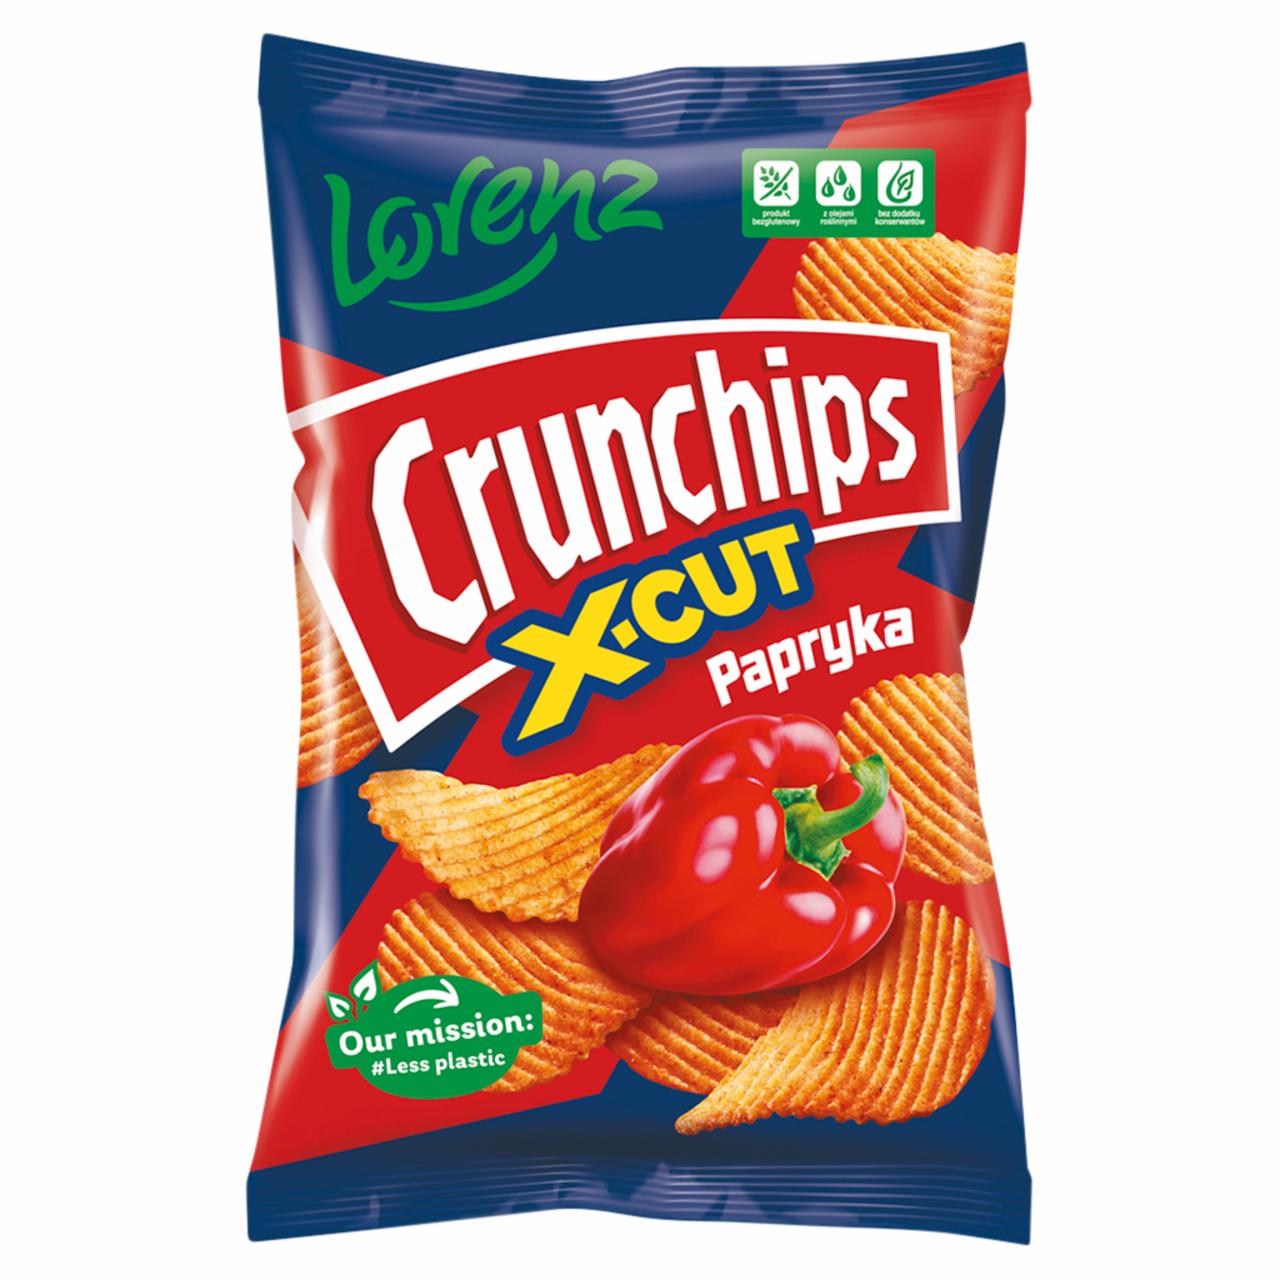 Fotografie - Crunchips X-Cut Paprika Flavour Riffled Potato Crisps